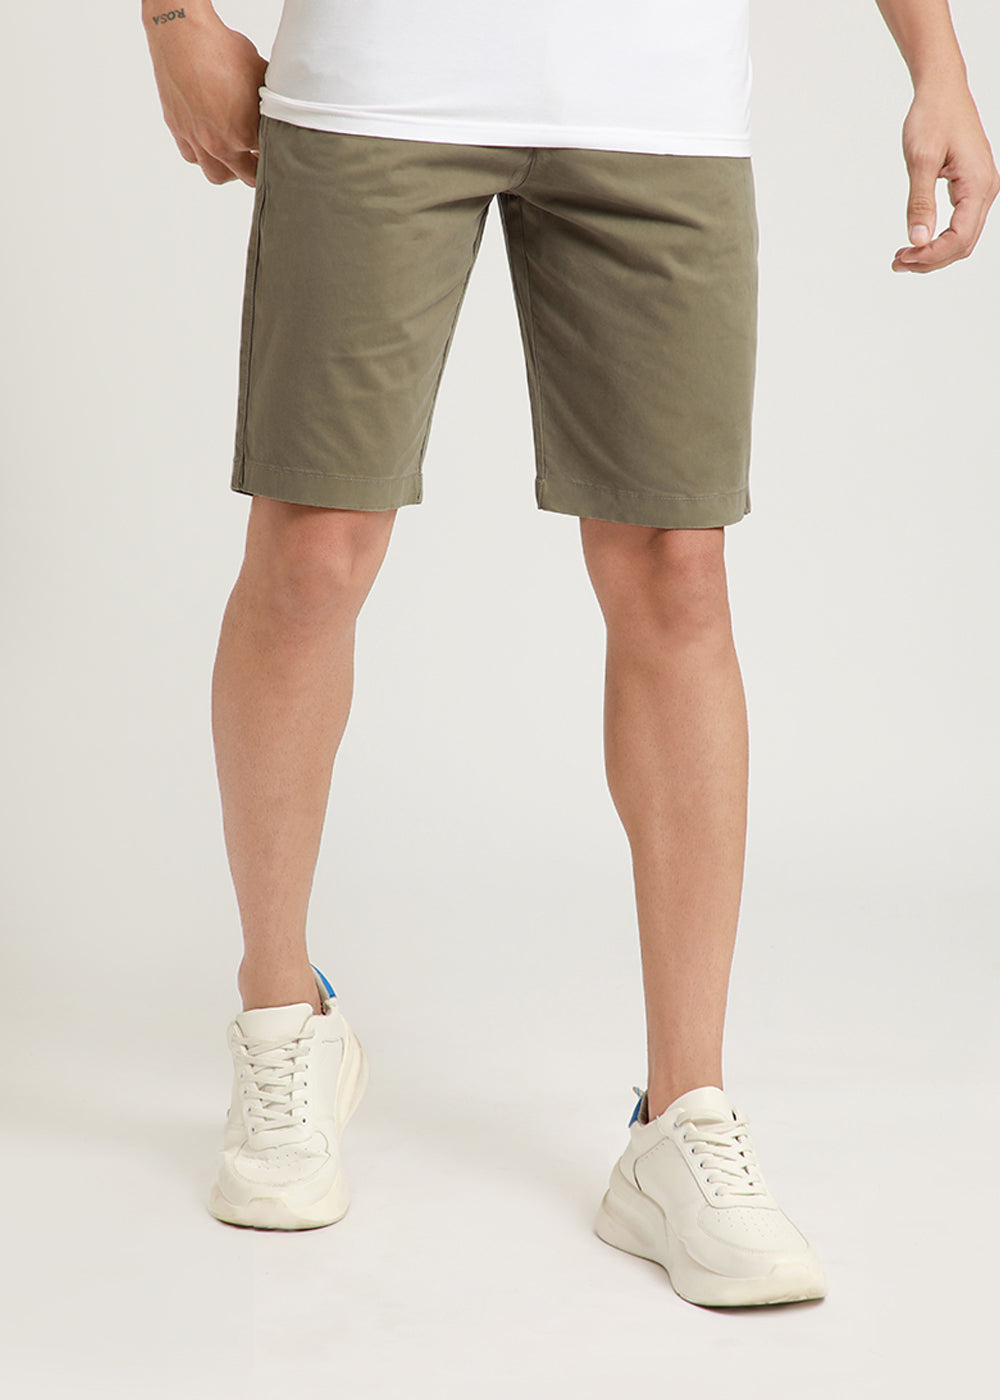 Light Olive Shorts